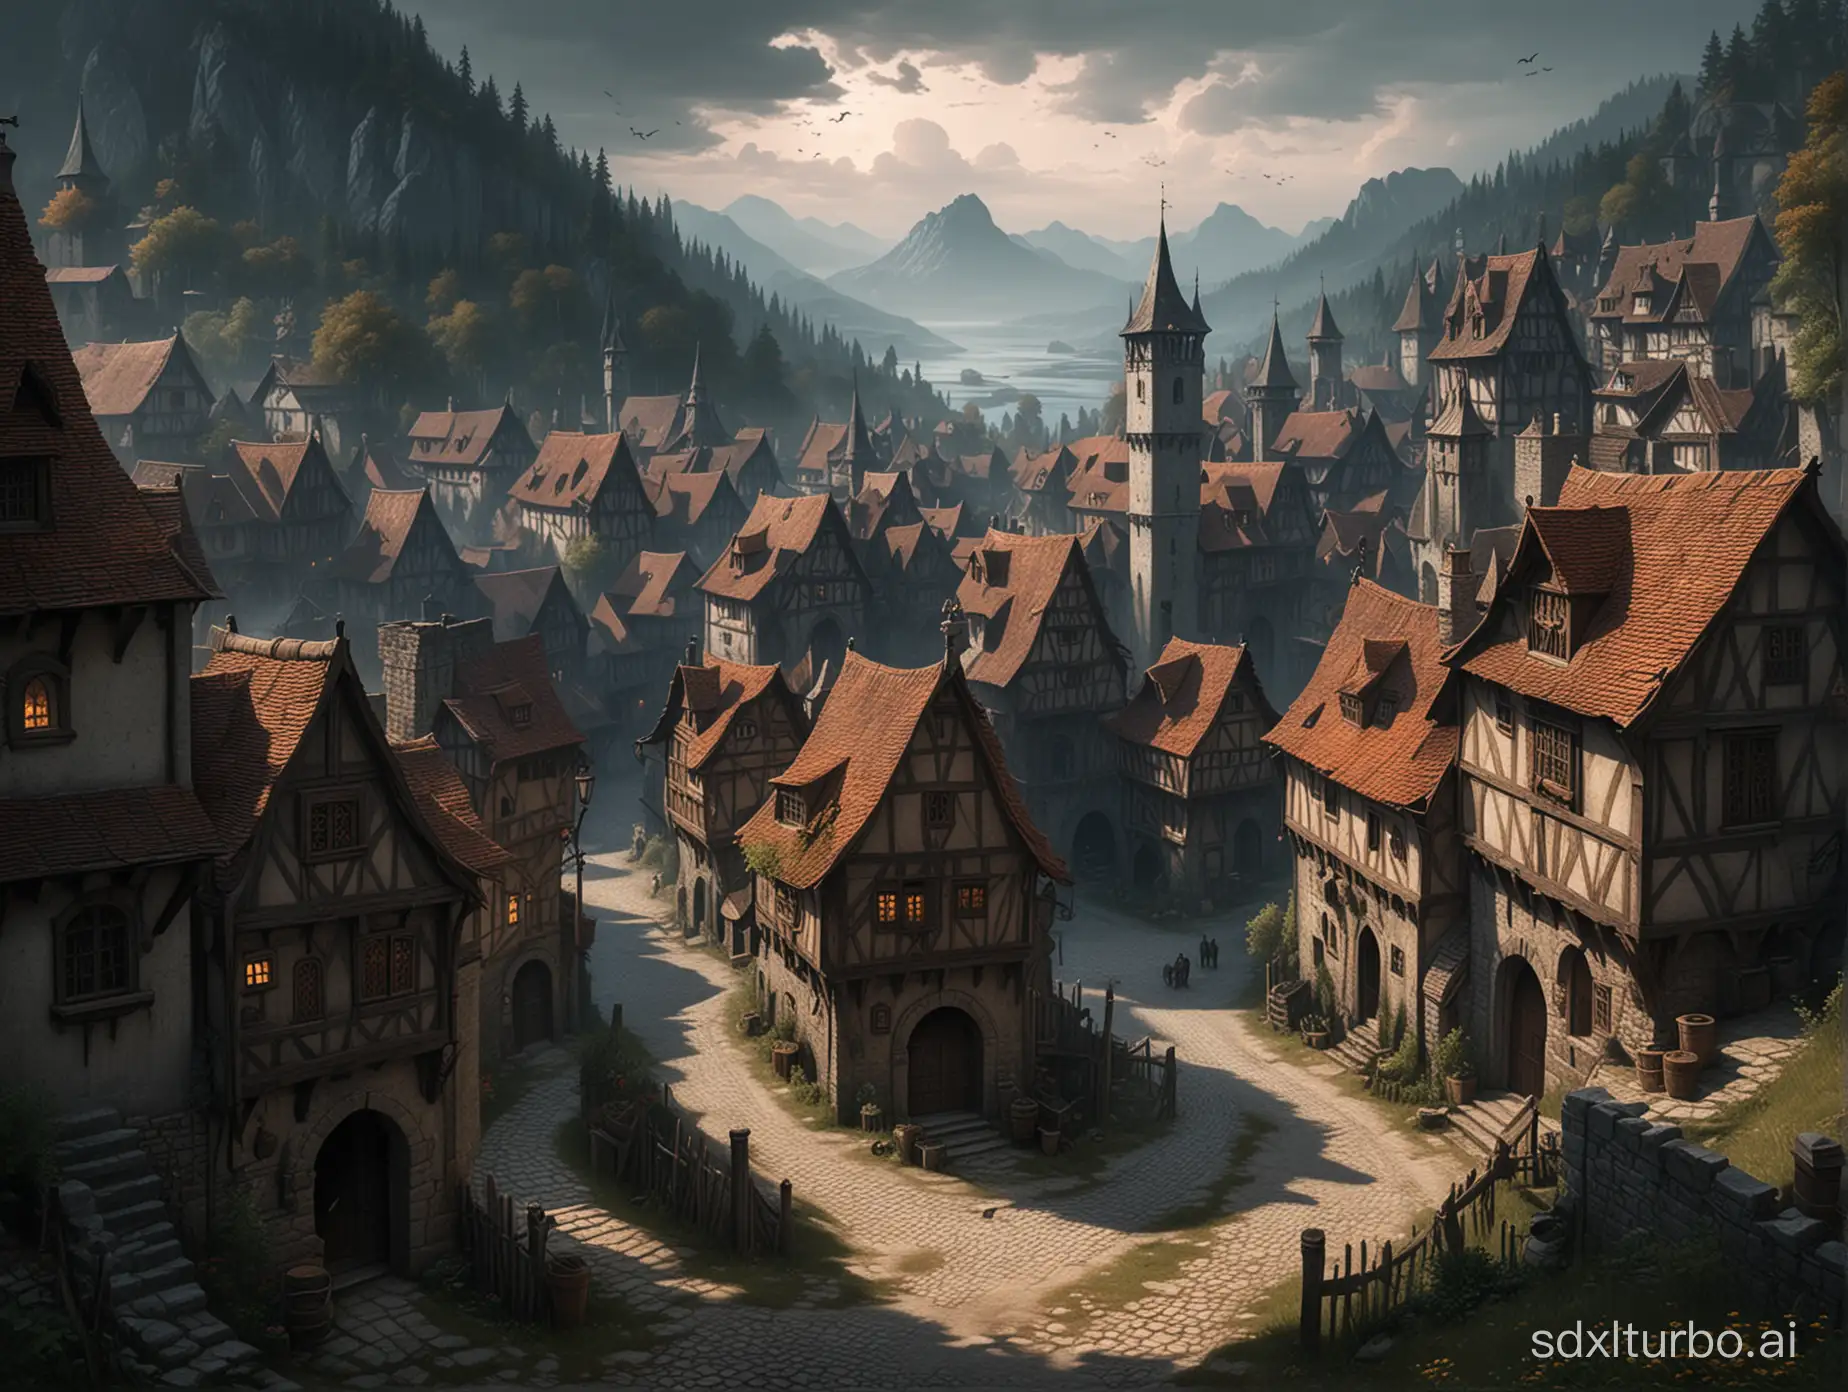 Mystical-Ravenloft-Style-Medieval-Village-Scene